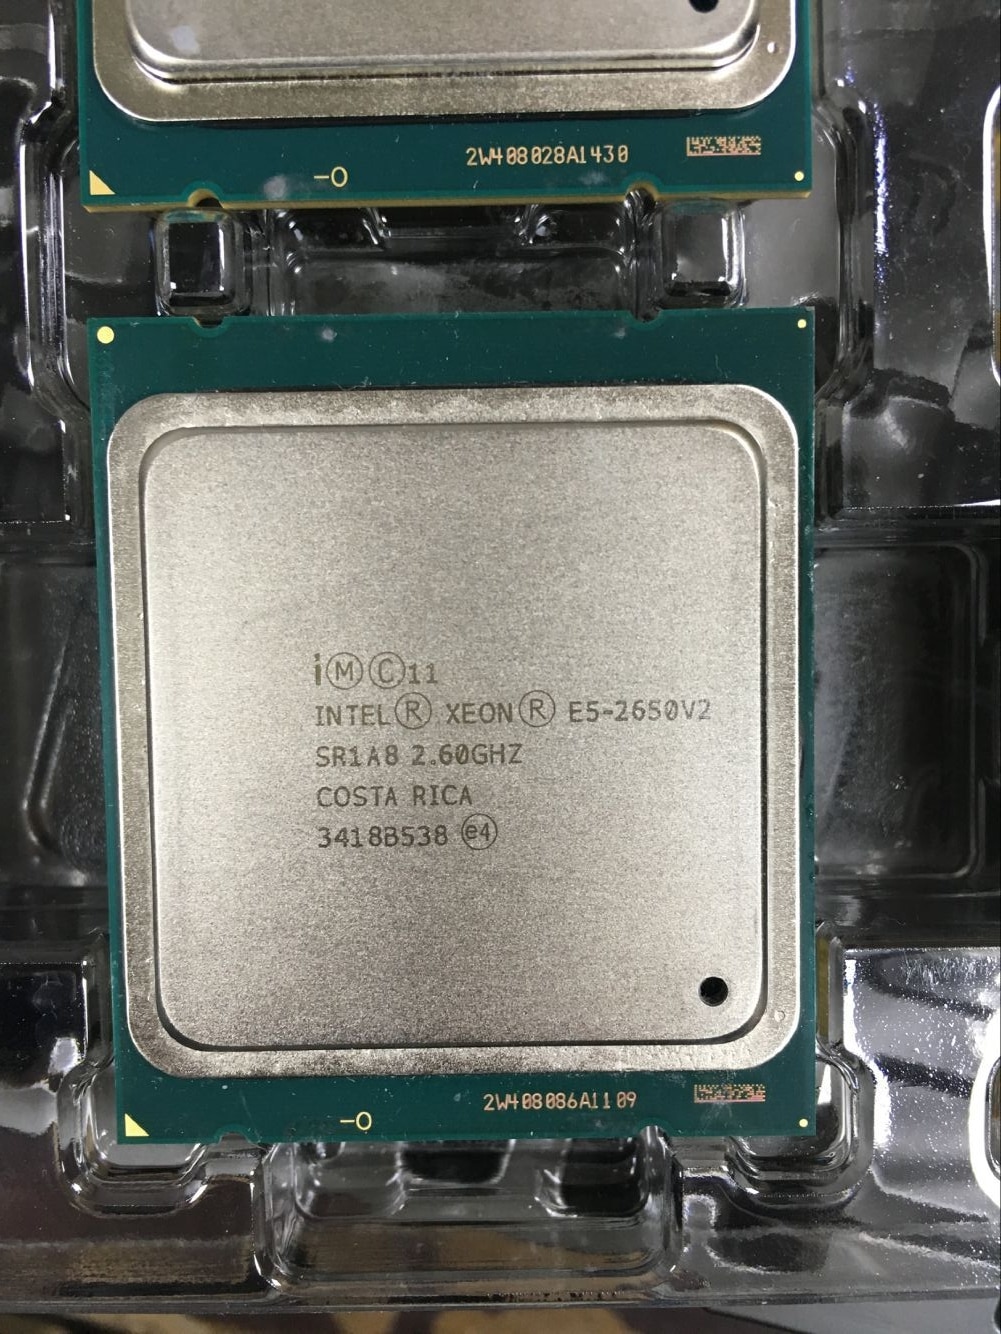 Processador Intel Xeon E5-2650 V2 E5 2650 V2 CPU LGA 2.6 2011...